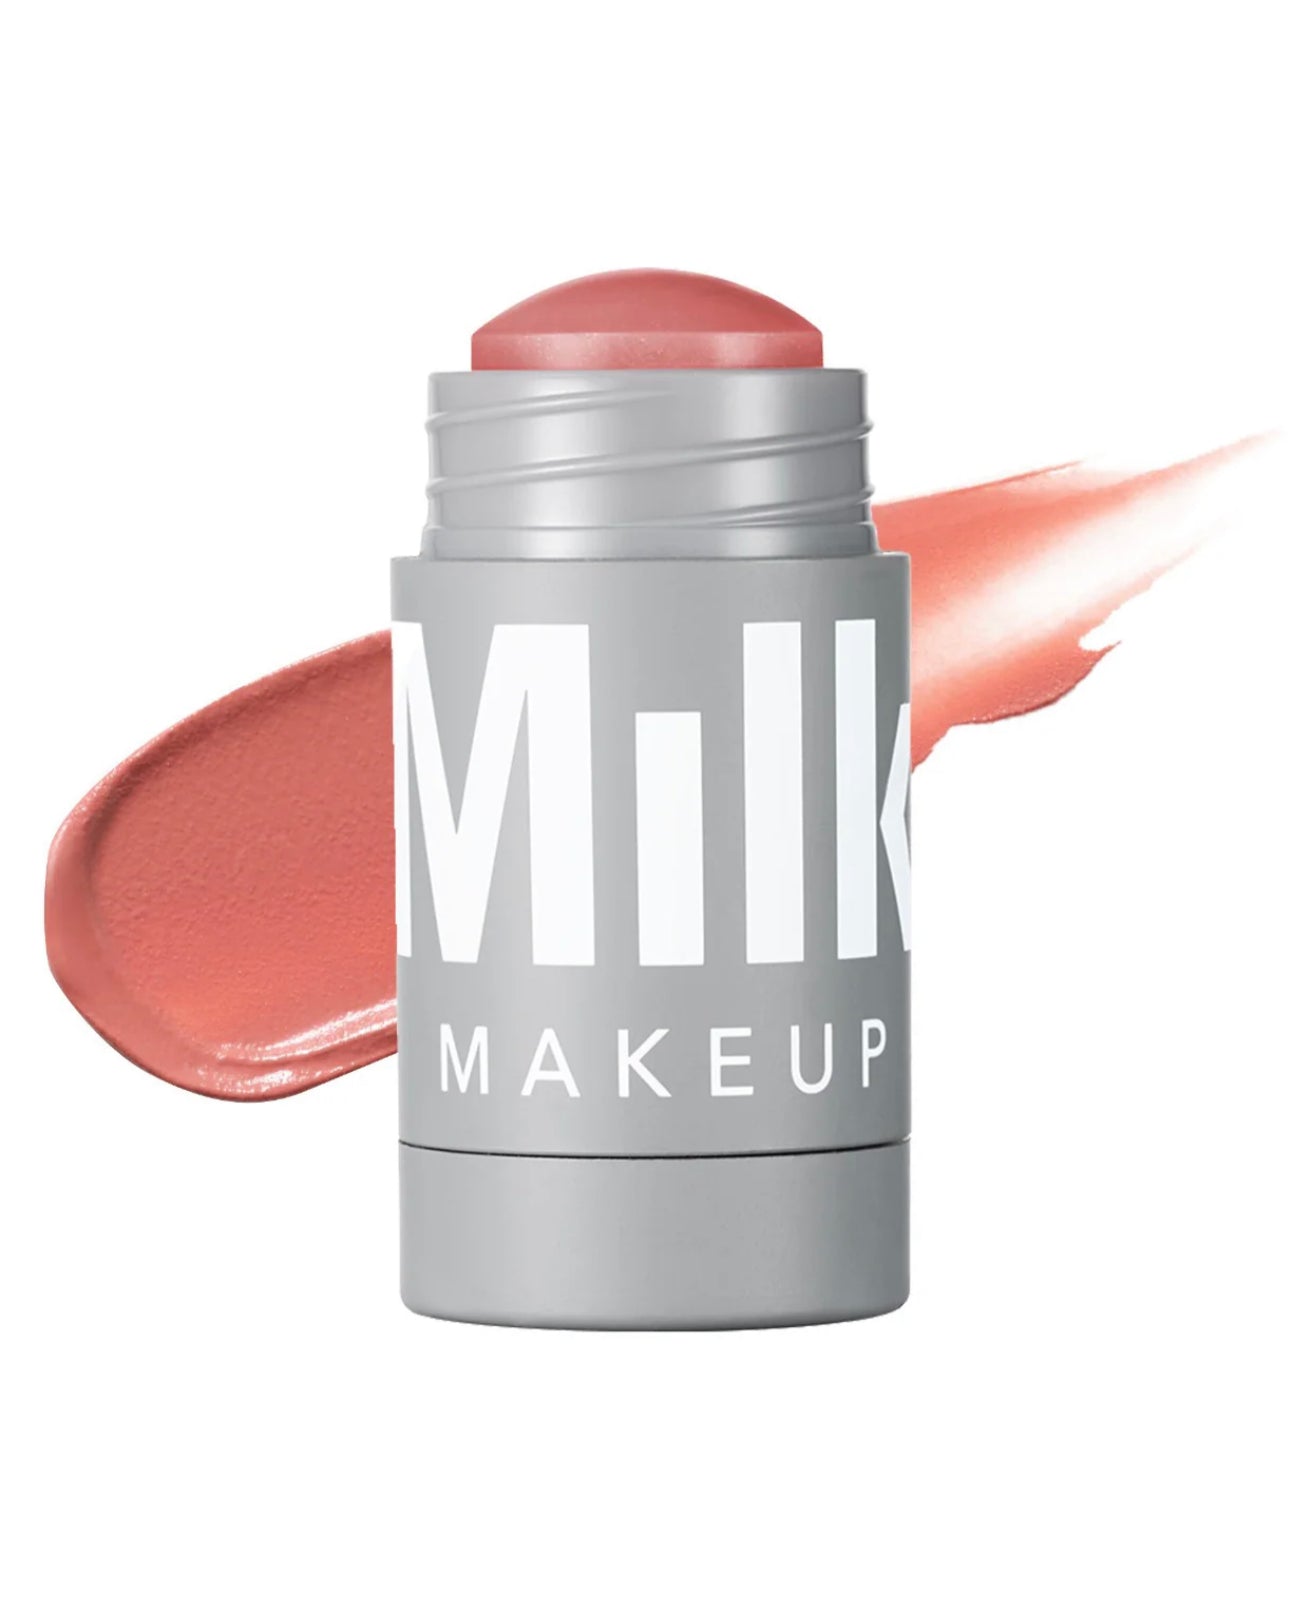 Кремові рум’яна в стіку Milk Makeup Lip + Cheek Cream Blush Stick